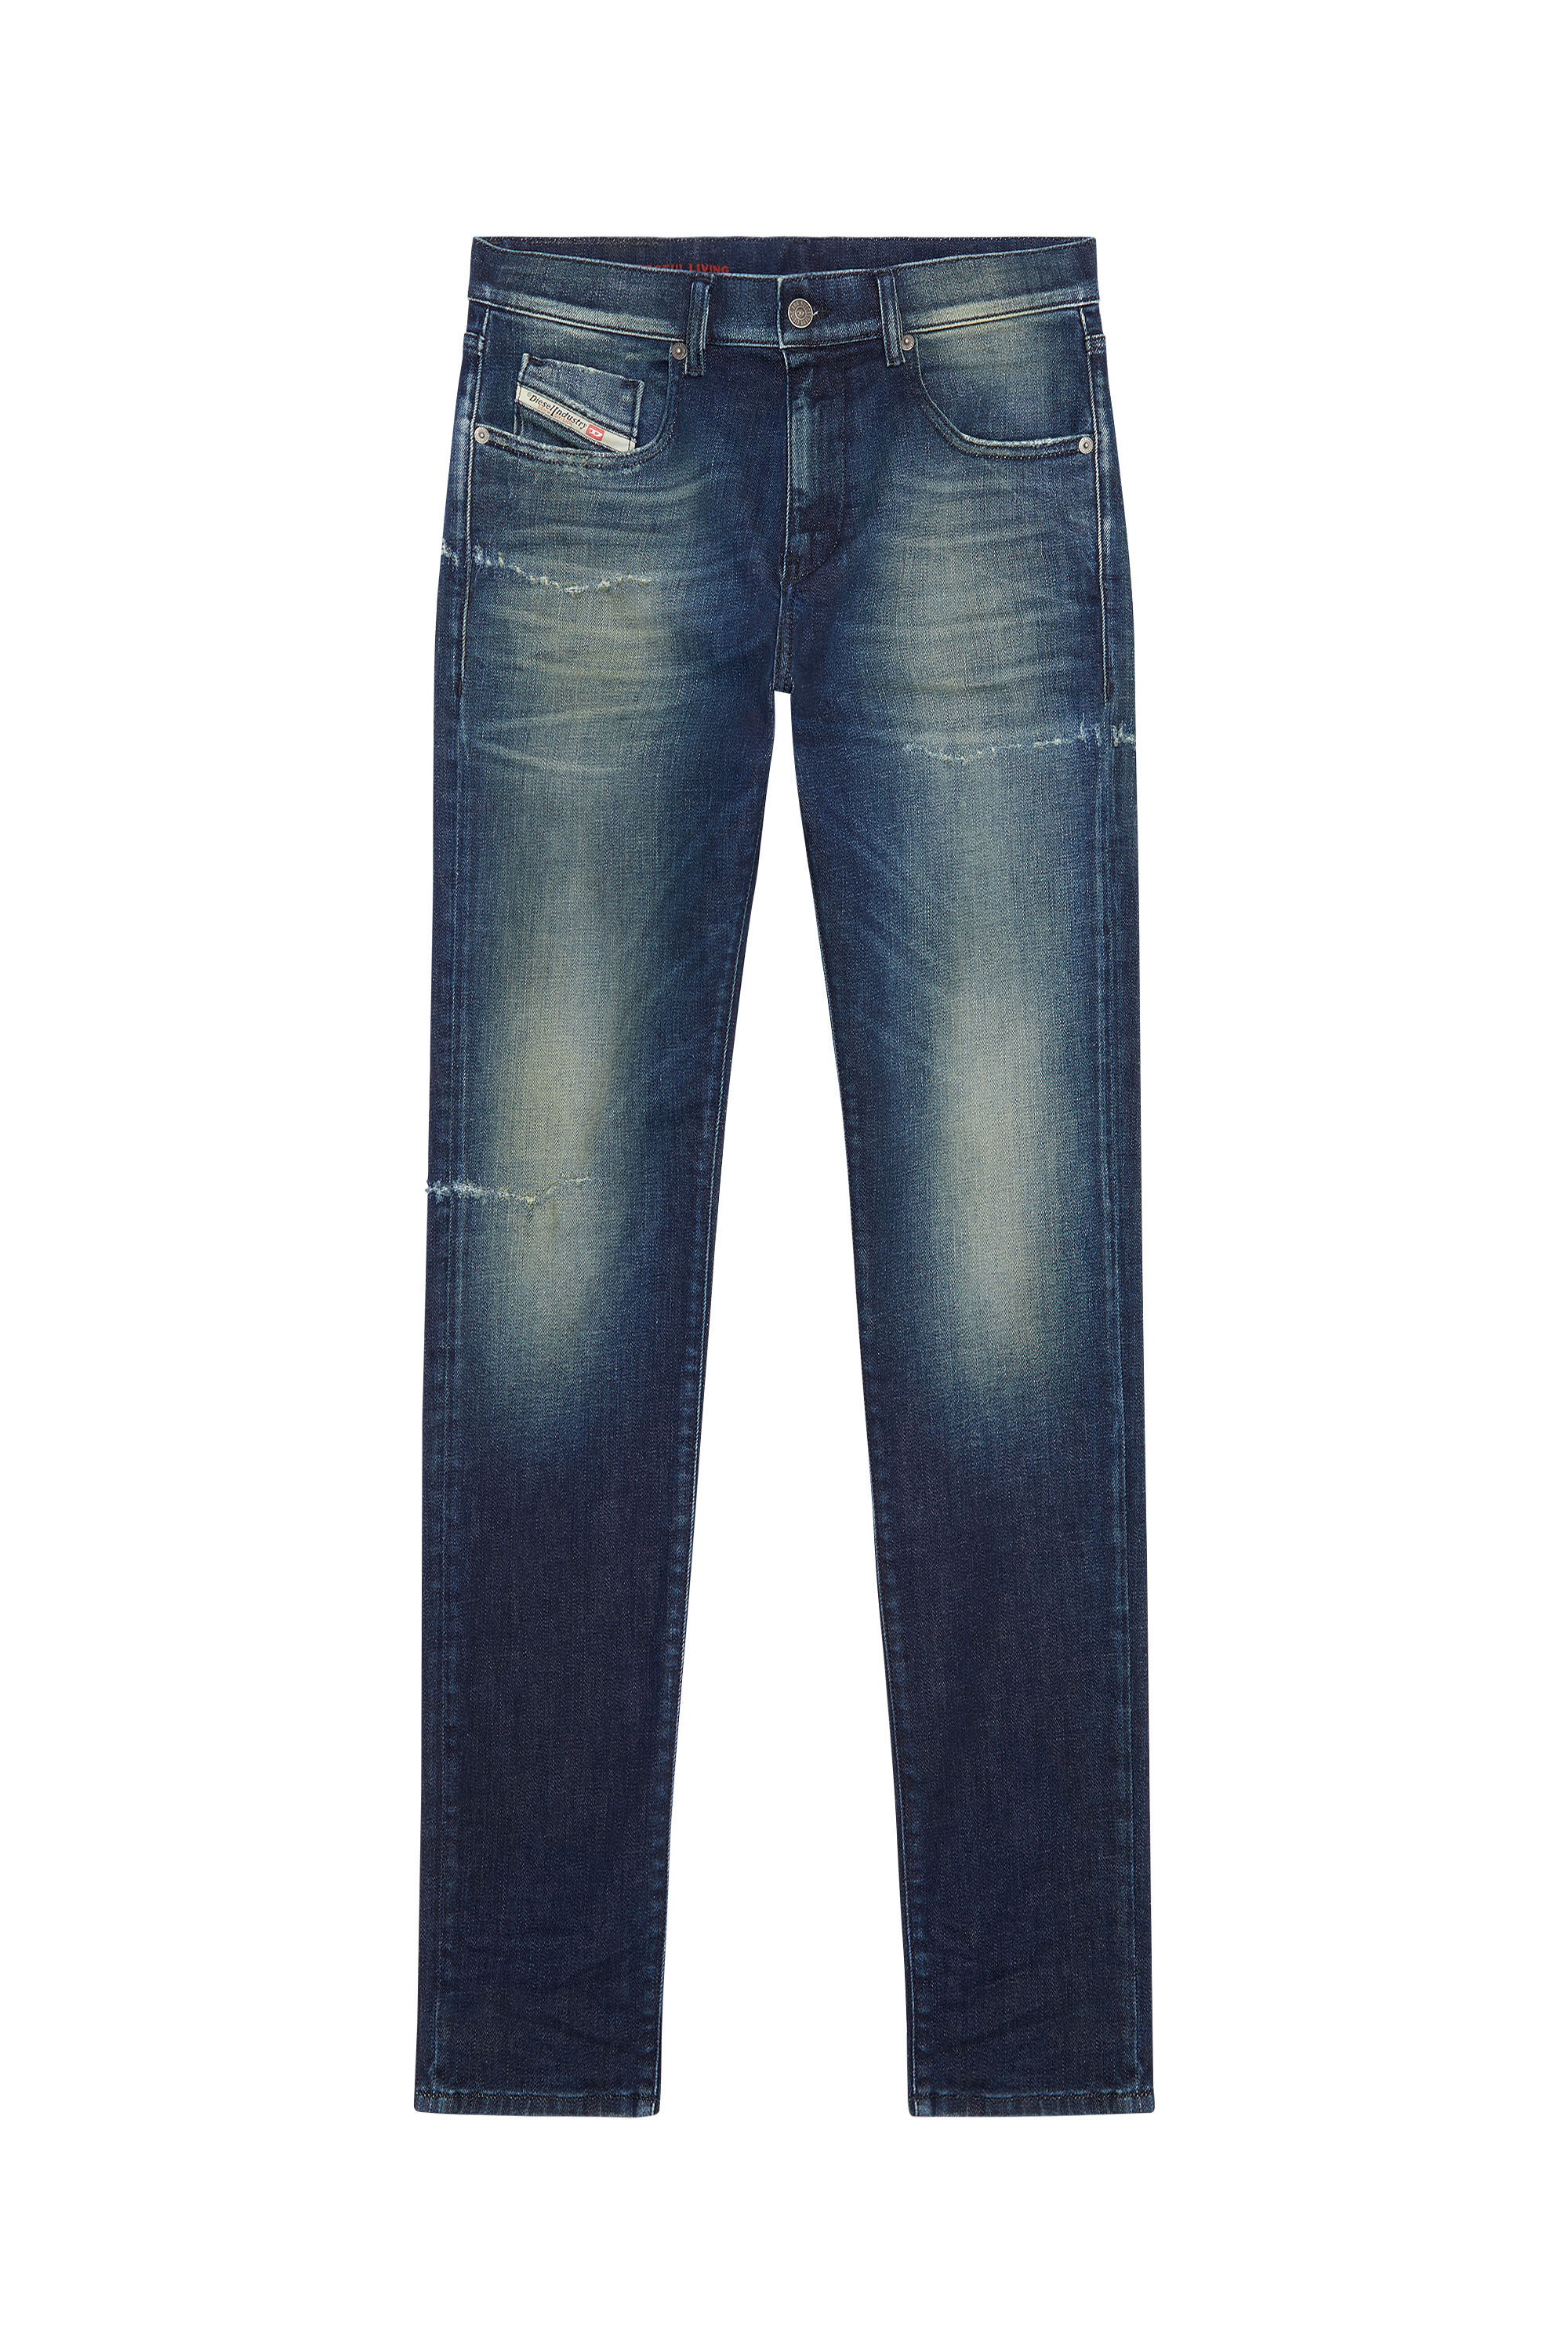 Diesel - Slim Jeans 2019 D-Strukt 09F57,  - Image 2